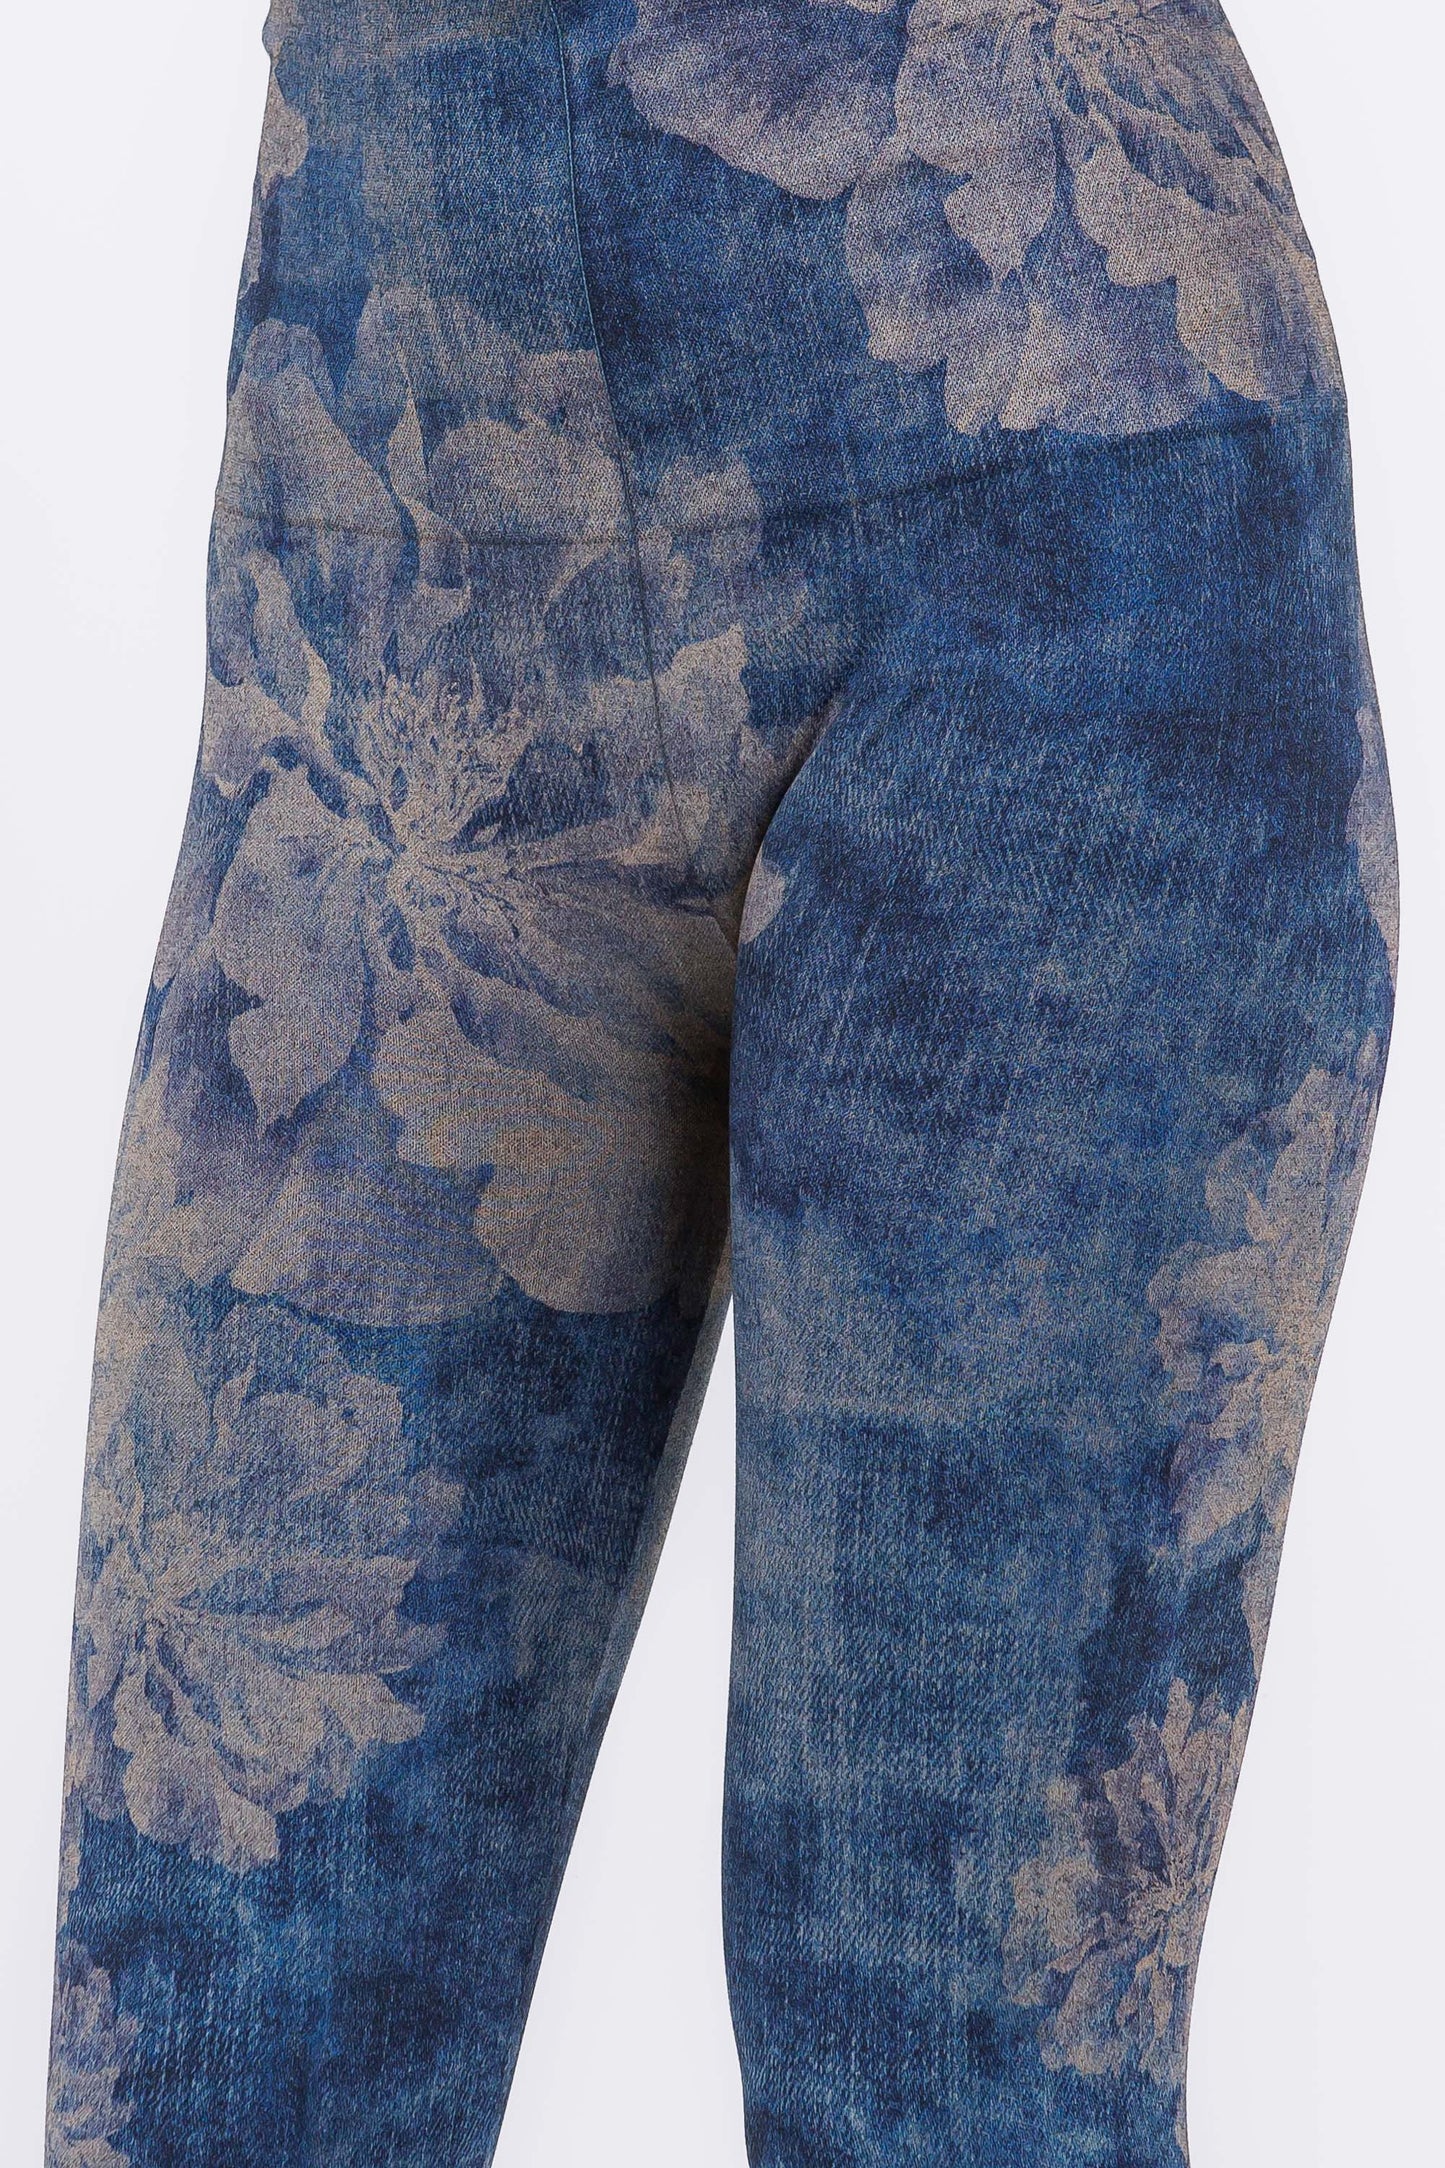 Reverse Dye Peonies on Denim Printed Leggings